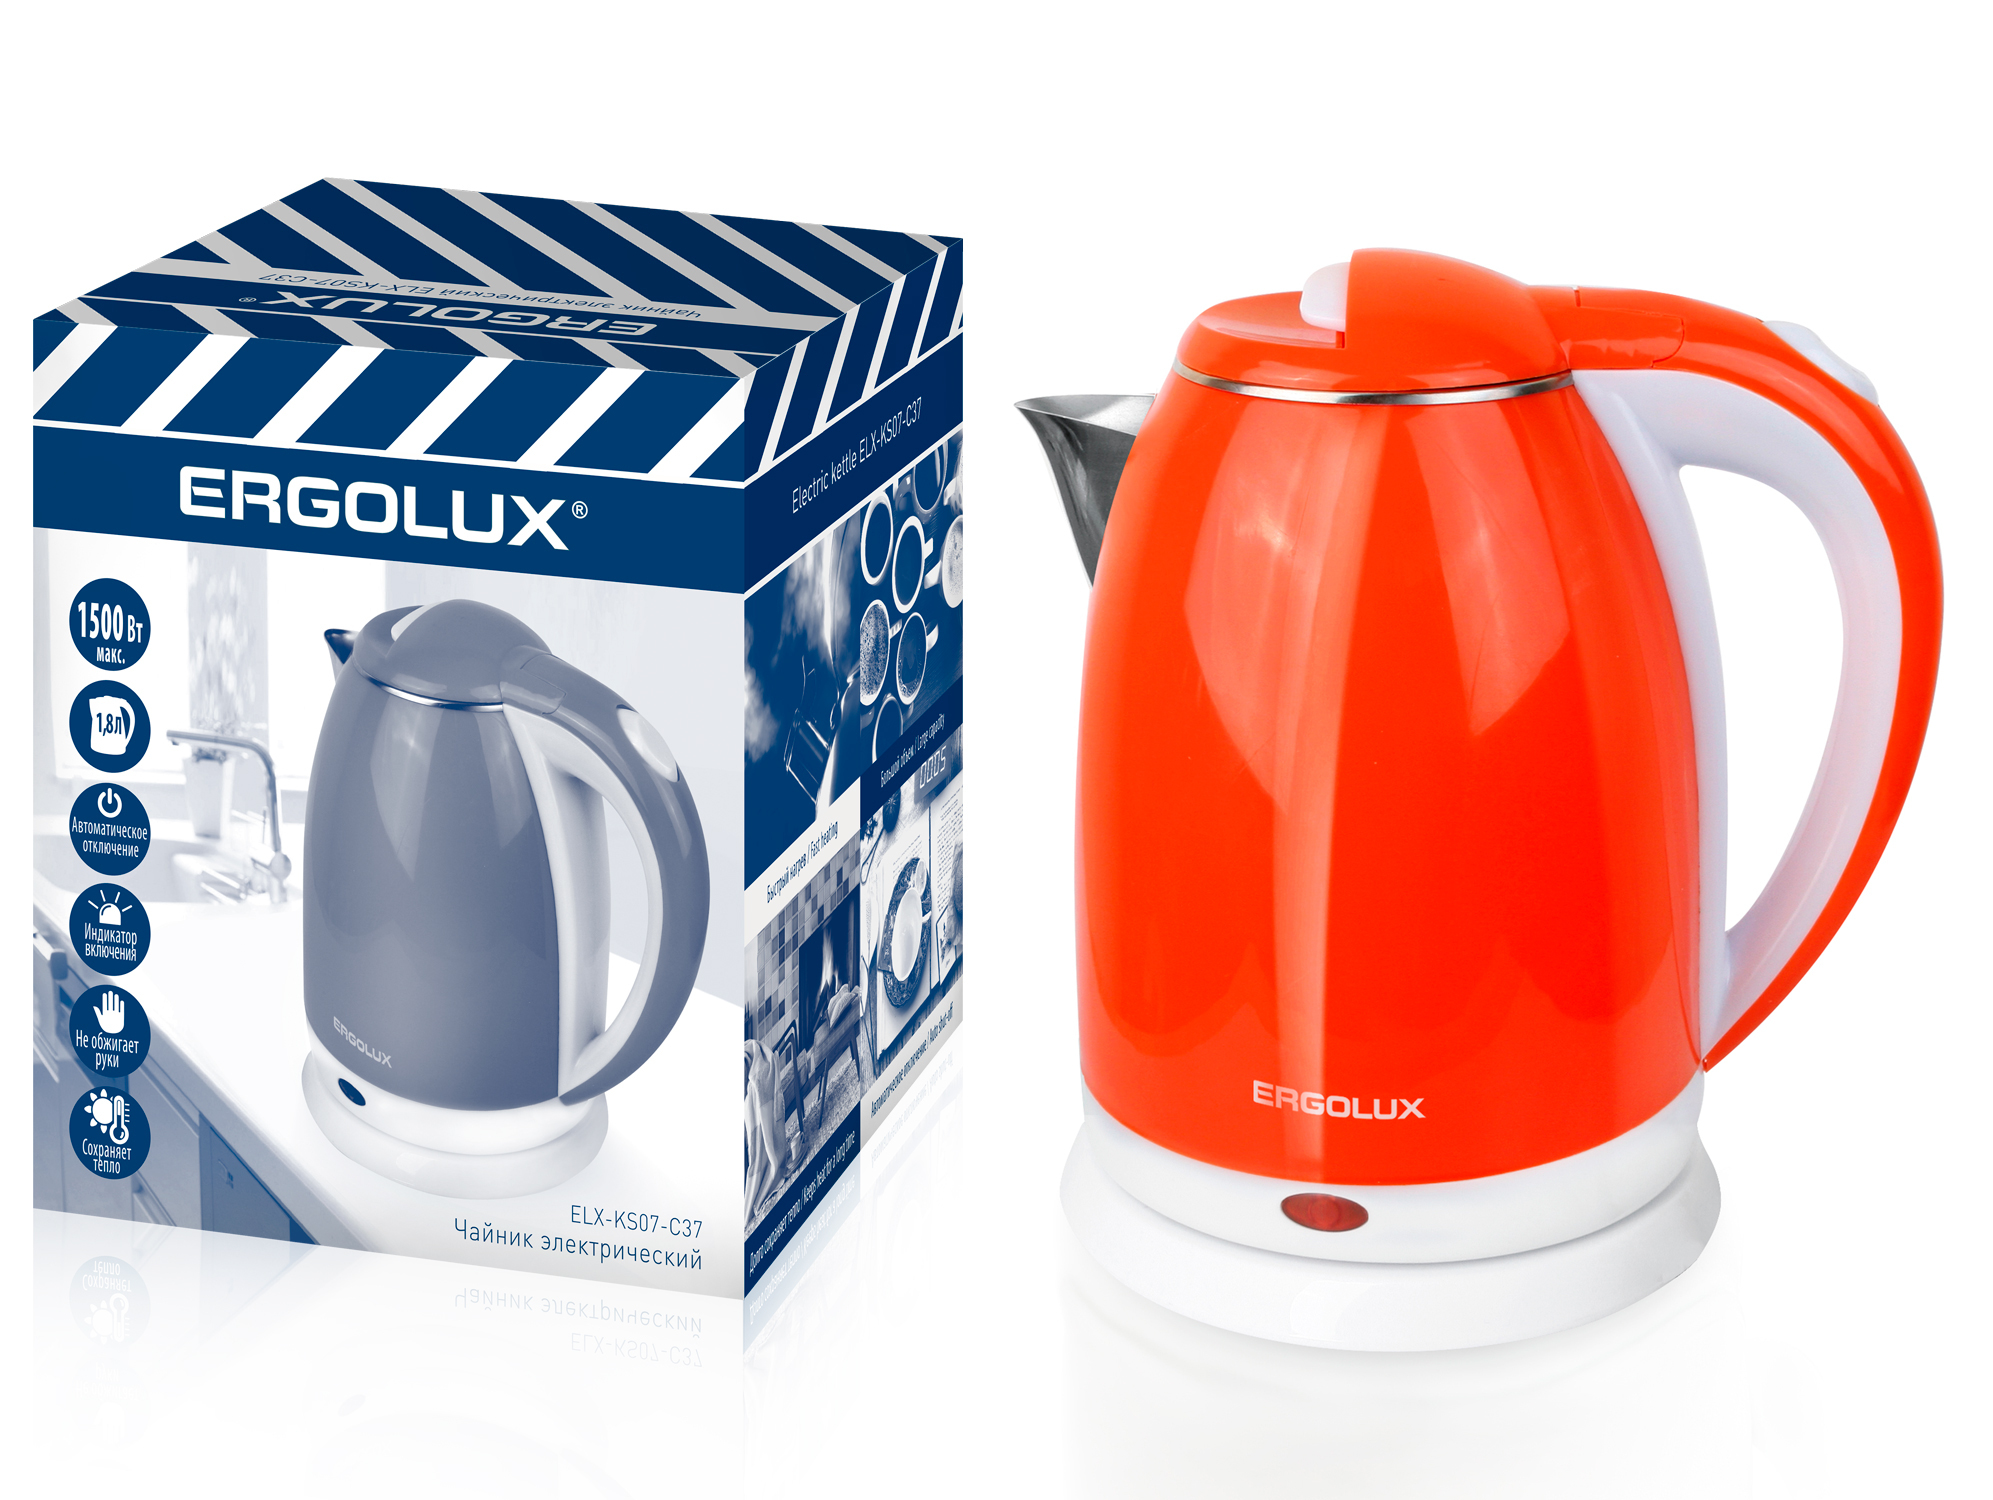 Чайник ERGOLUX ELX-KS07-C37 оранжево-белый  нерж.сталь/пластик, 1500 Вт ,1,8л, 220-240В  (/уп)